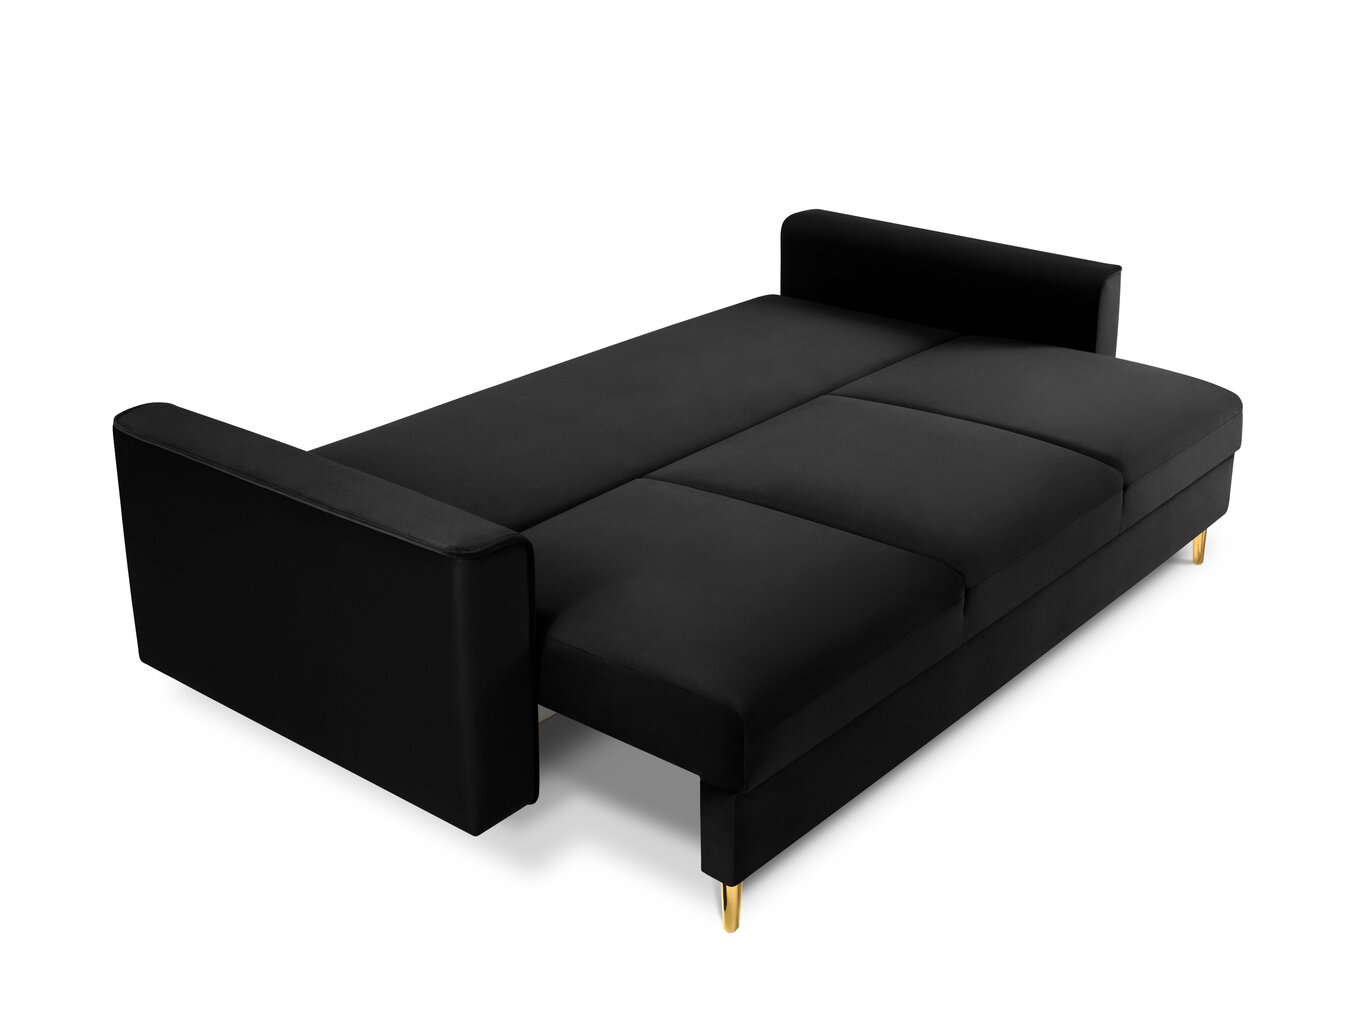 Trivietė sofa Mazzini Sofas Cartadera, juoda/auksinės spalvos kaina ir informacija | Sofos | pigu.lt